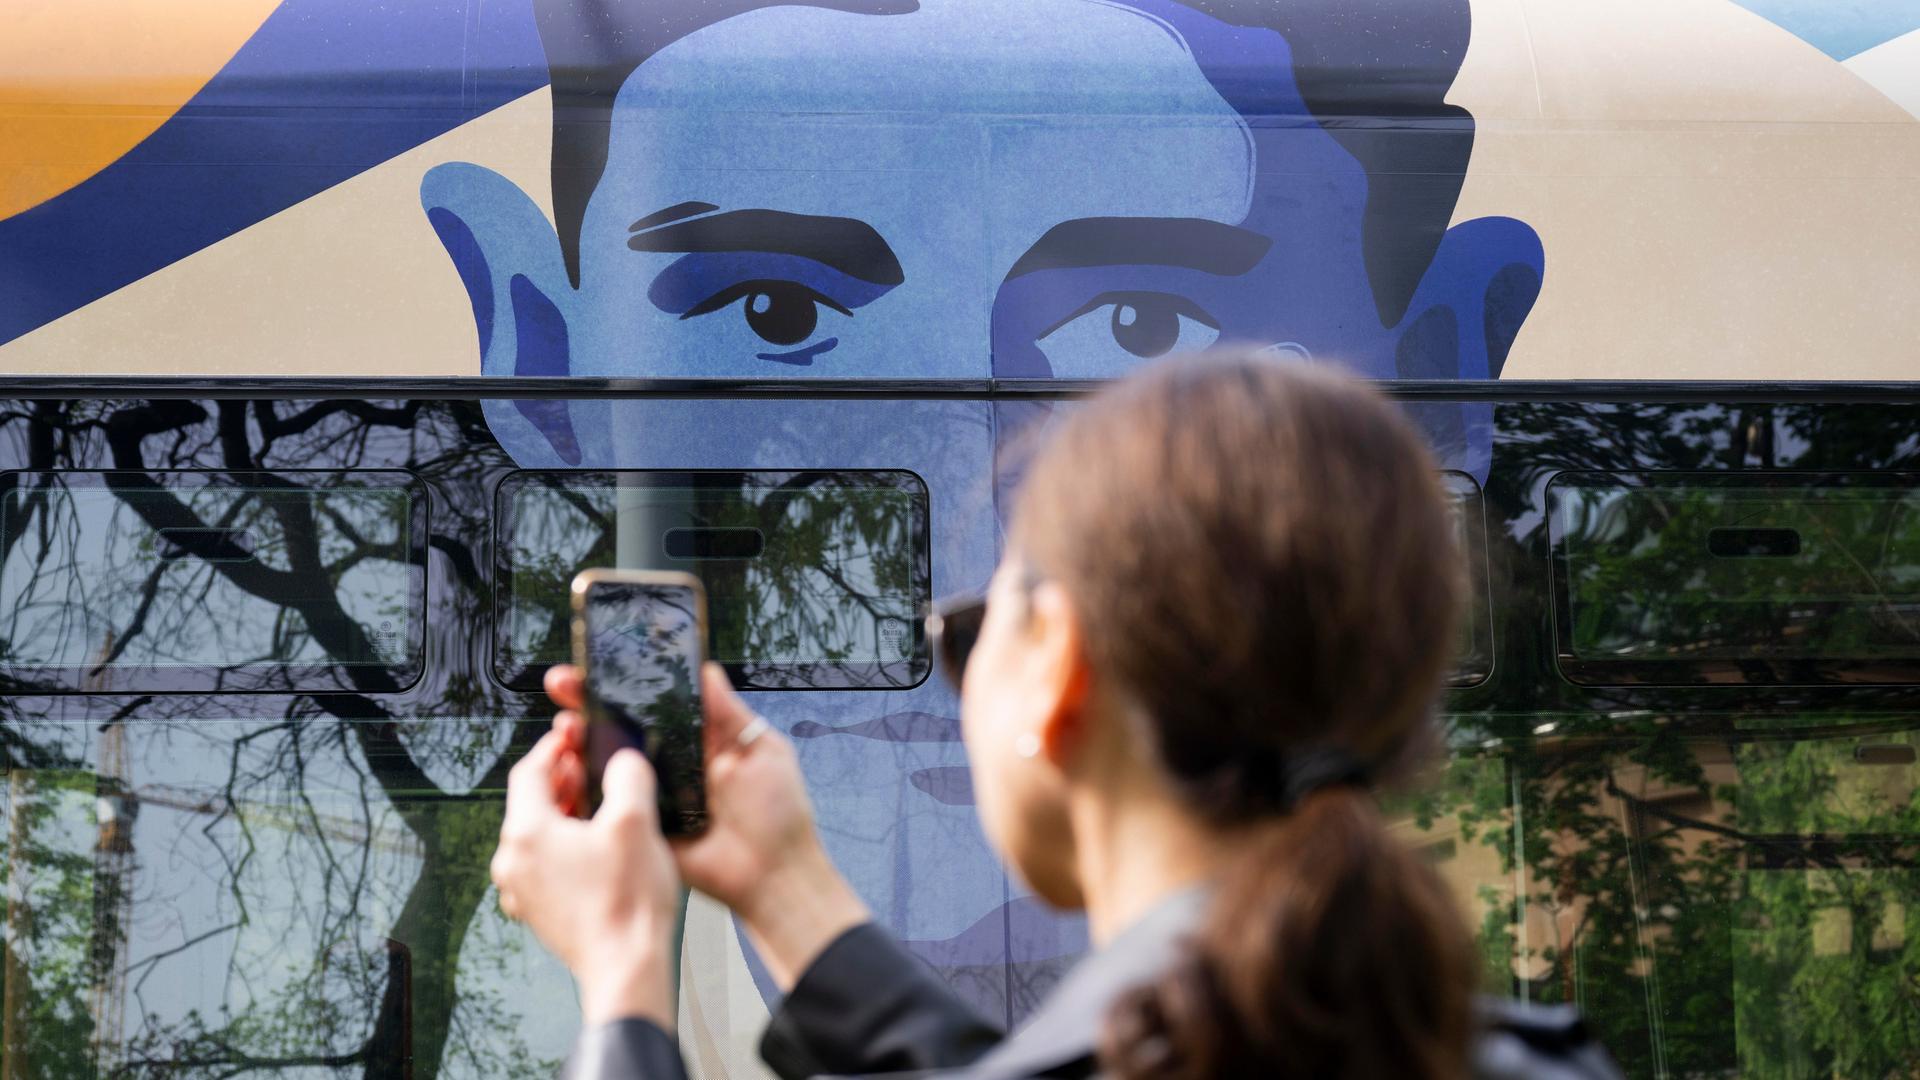 Eine Tram in Prag trägt ein Porträt von Franz Kafka. Eine Person davor macht ein Foto davon.